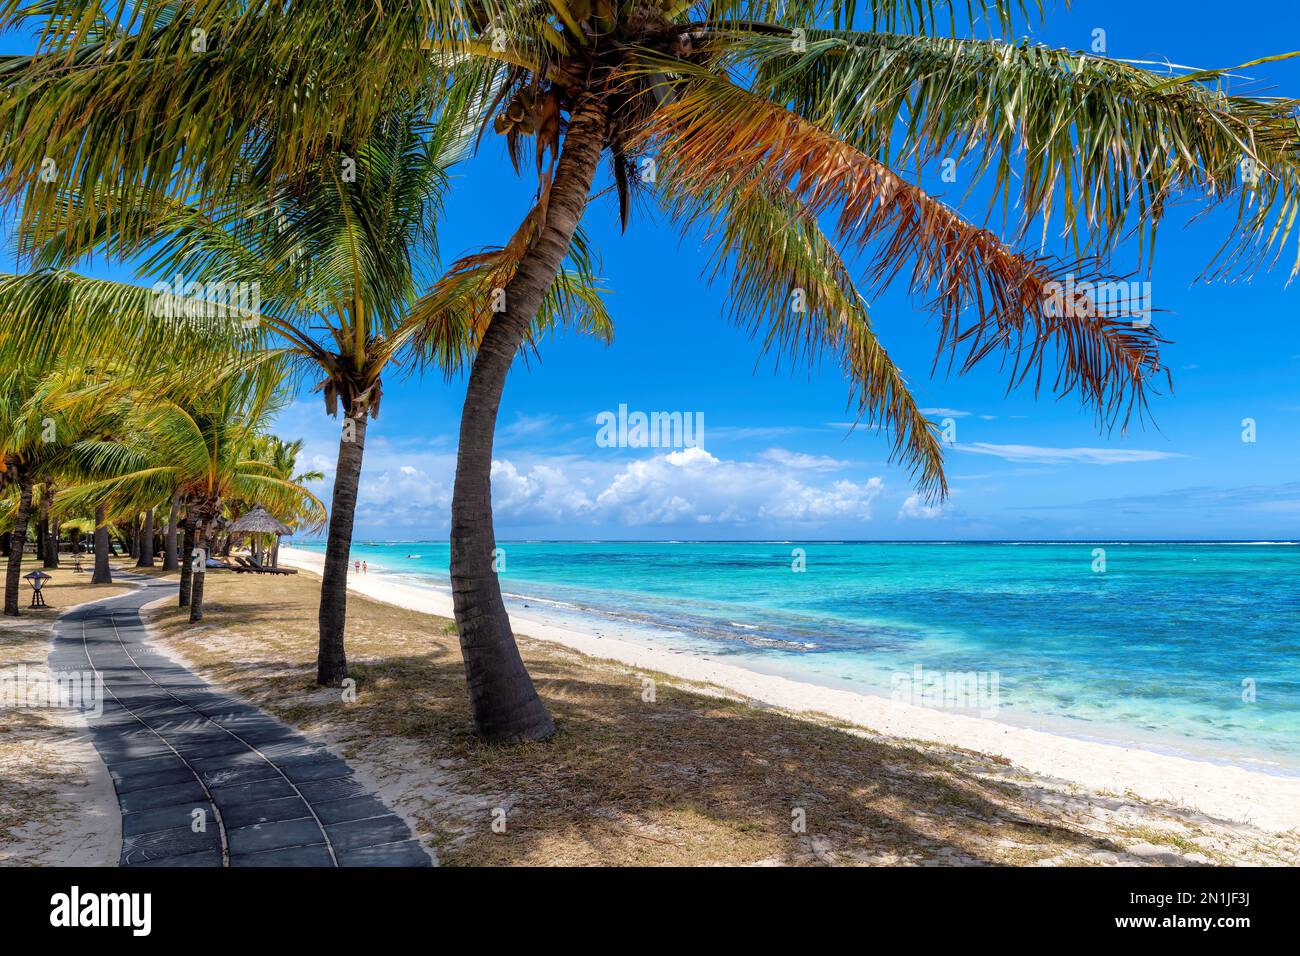 Allée de plage dans la plage tropicale avec palmiers et mer turquoise Banque D'Images